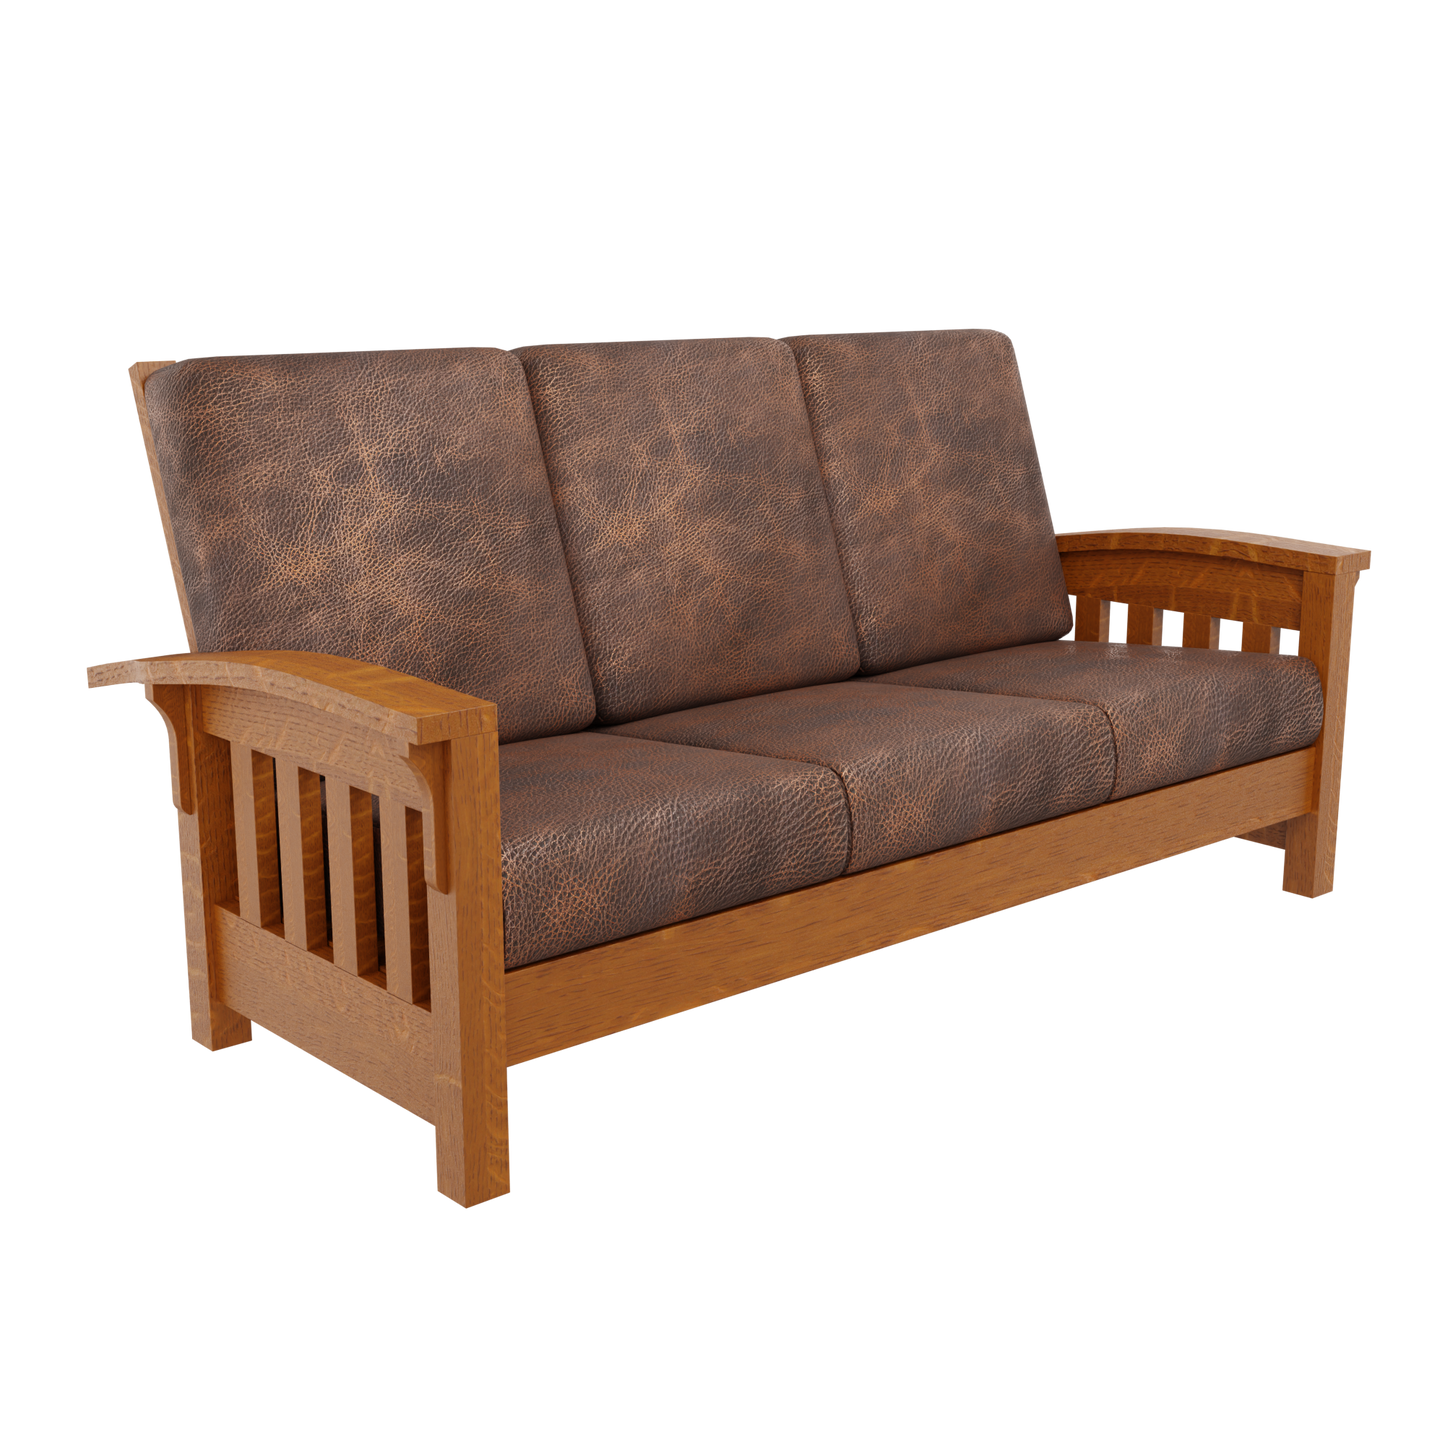 Bent Arm Wood Sofa